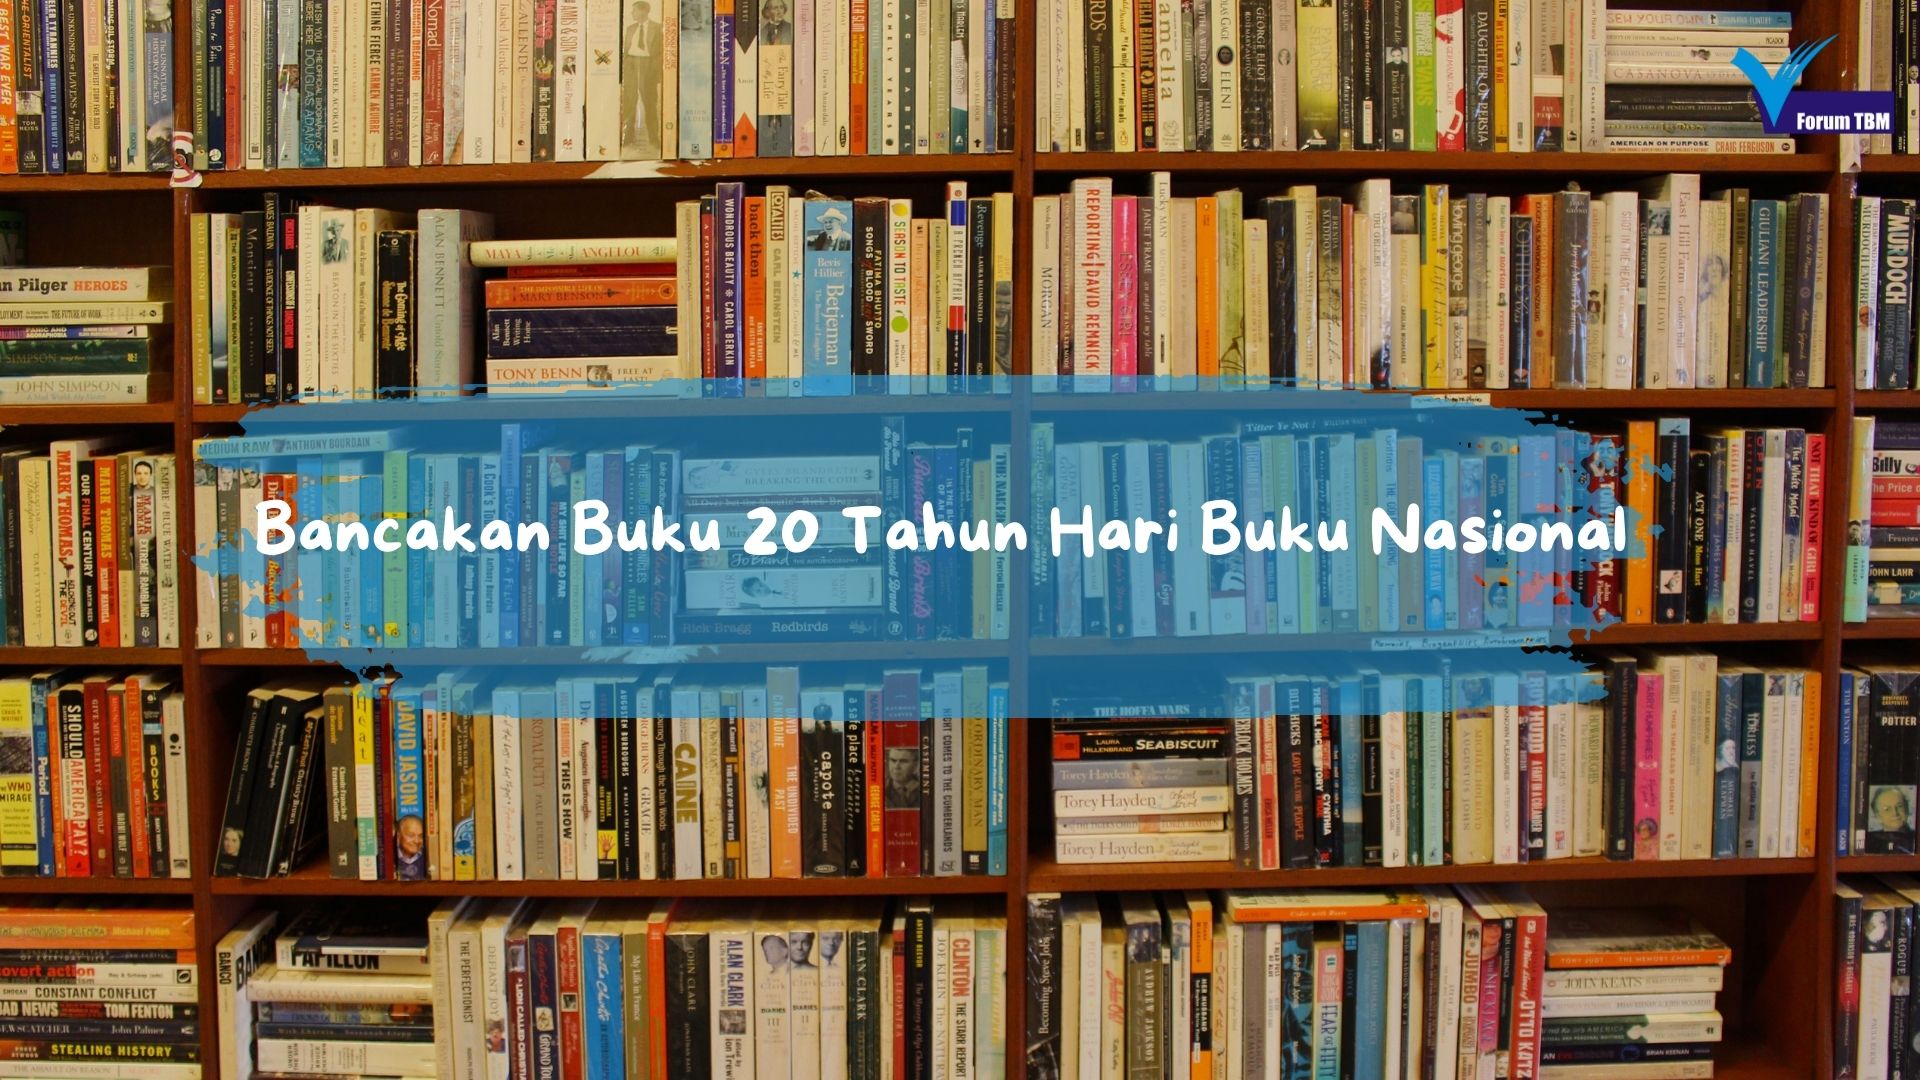 Bancakan Buku 20 Tahun Hari Buku Nasional